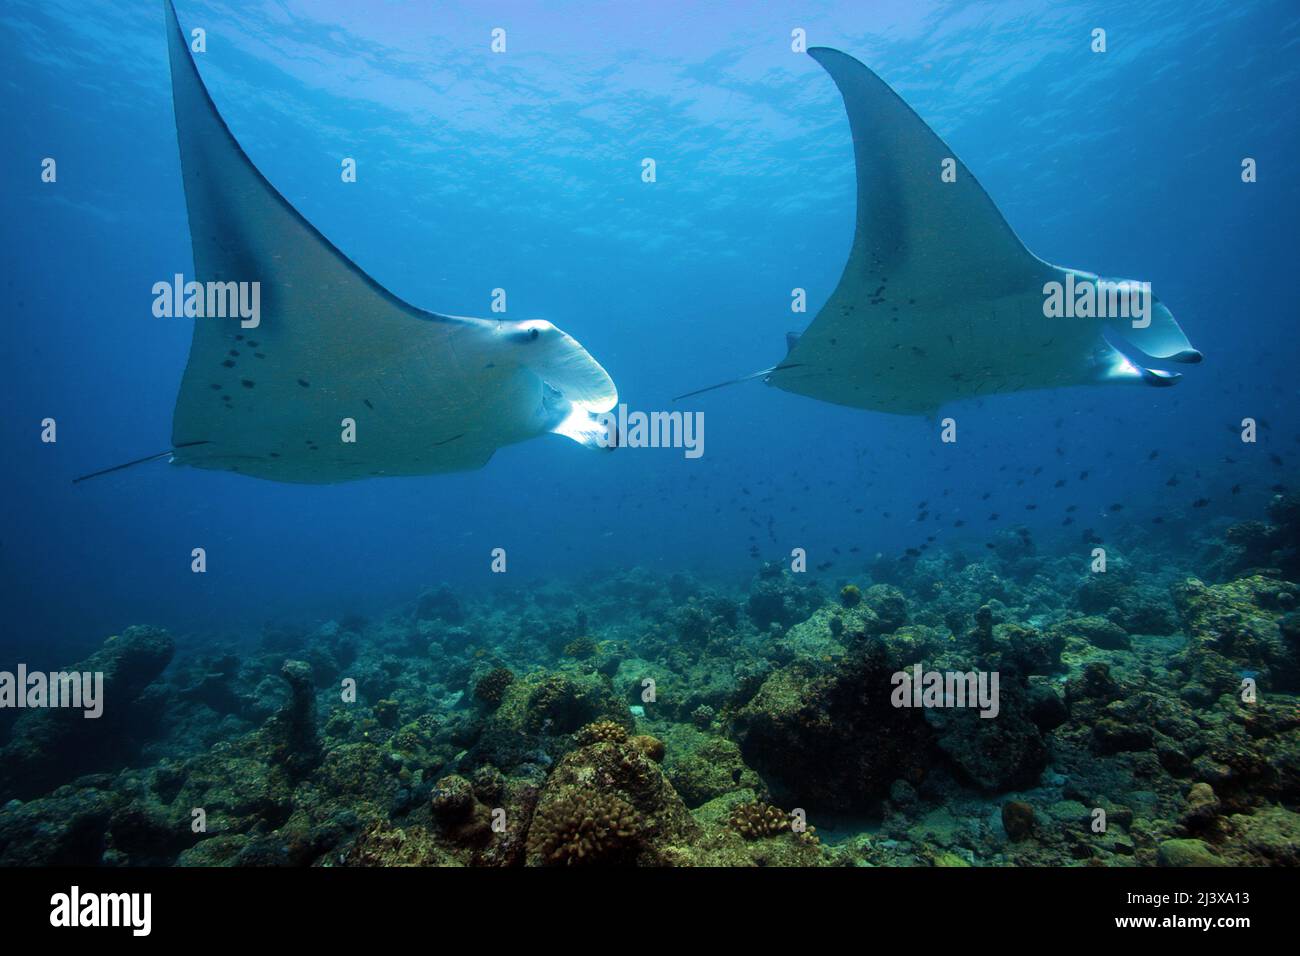 Großer ozeanischer Manta-Strahl oder großer Manta-Strahl (Manta birostris), im blauen Wasser, Ari-Atoll, Malediven, Indischer Ozean, Asien Stockfoto